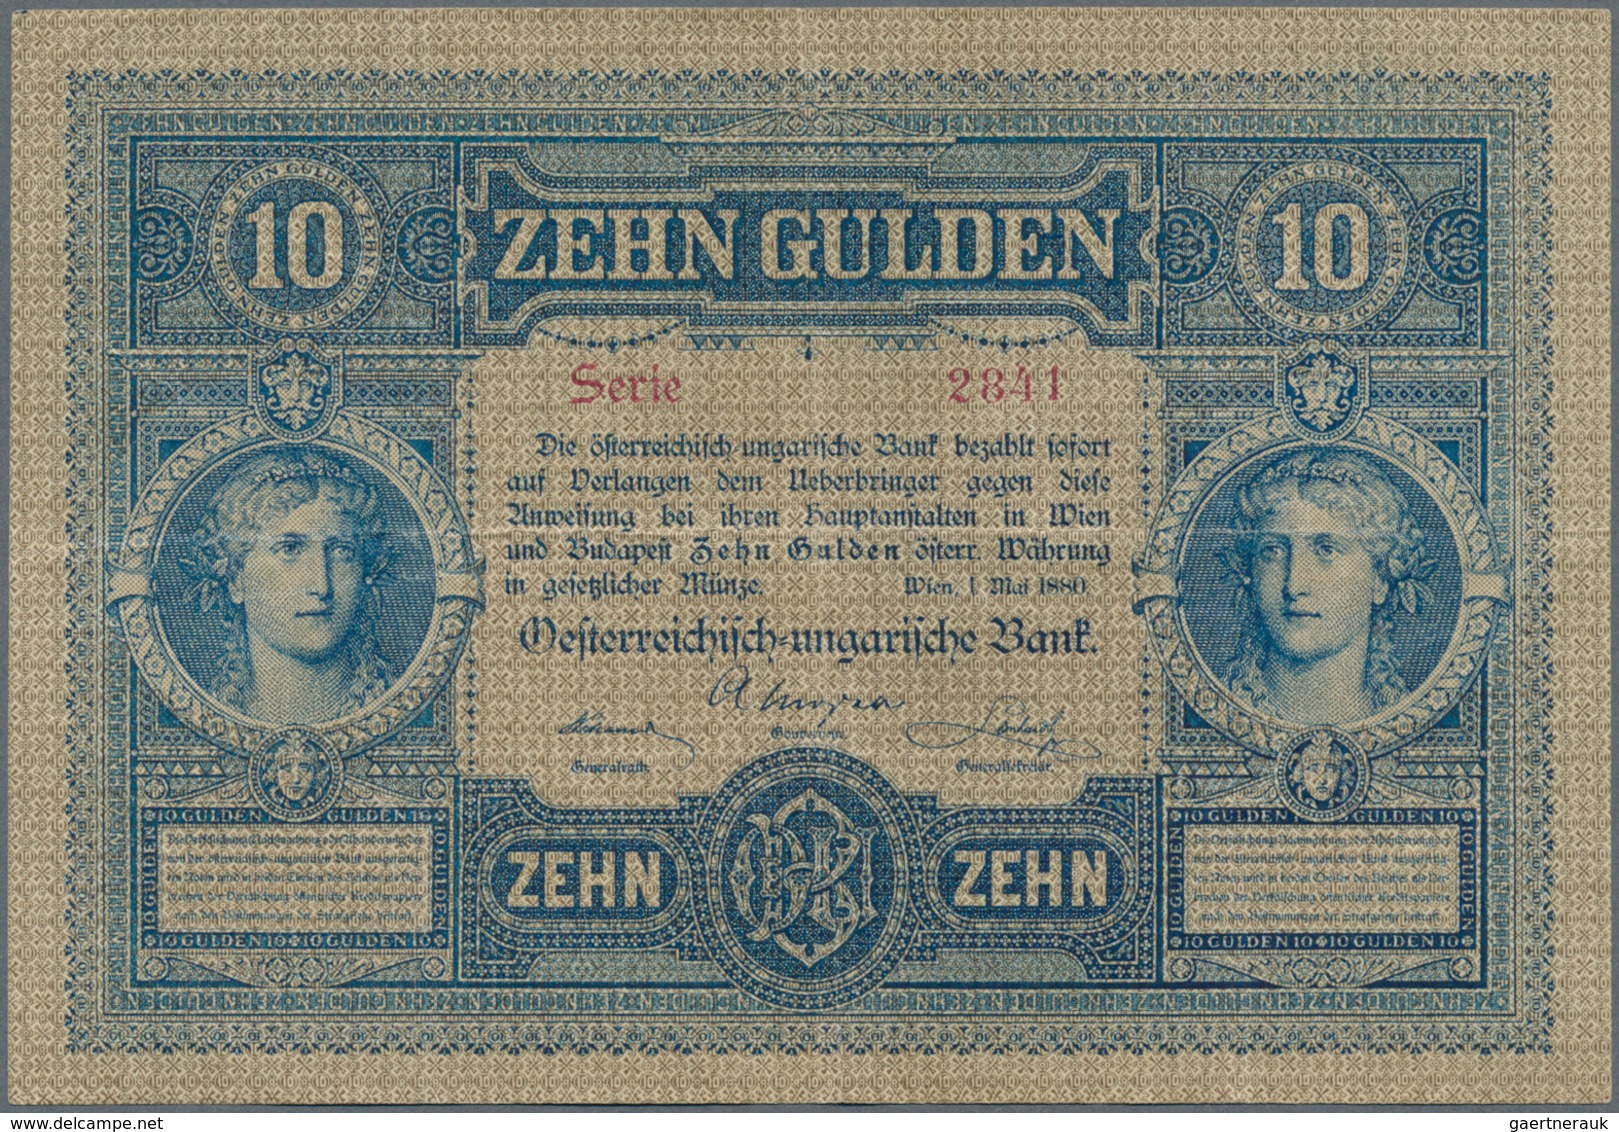 Austria / Österreich: 10 Gulden 1880 P. 1, S/N 023887, Rare Note In Nice Condition With Some Vertica - Autriche